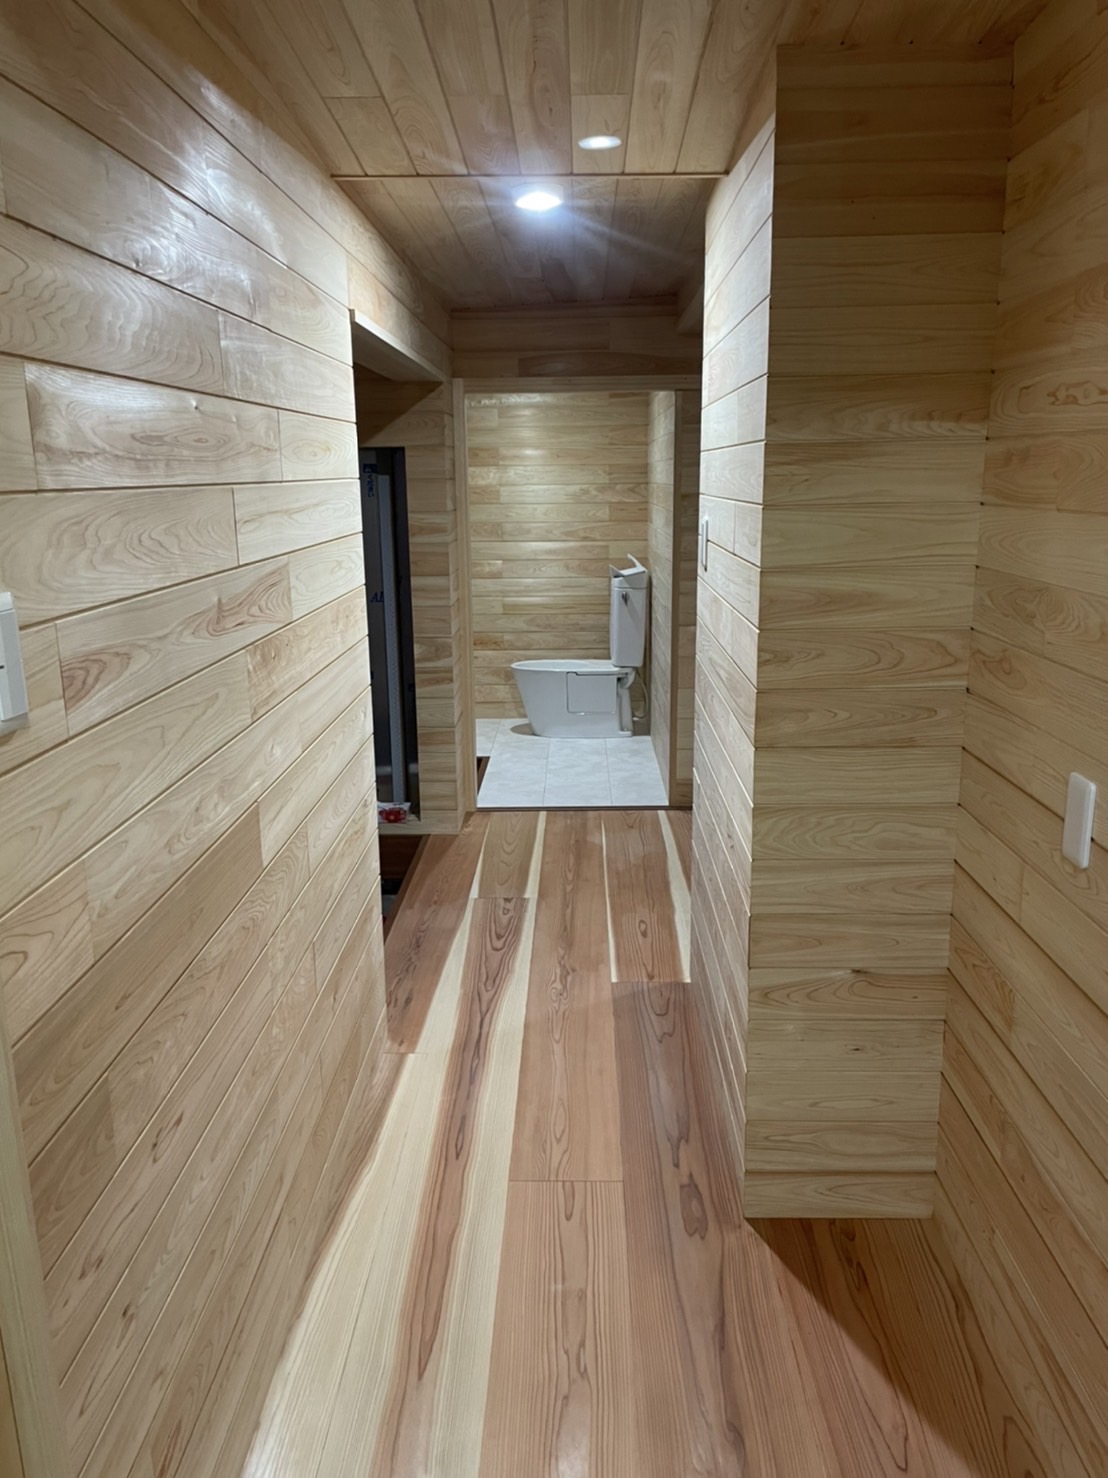 バリアフリーにしてトイレ増築リフォーム リノベーションを行ったお客様の施工事例 三矢建築